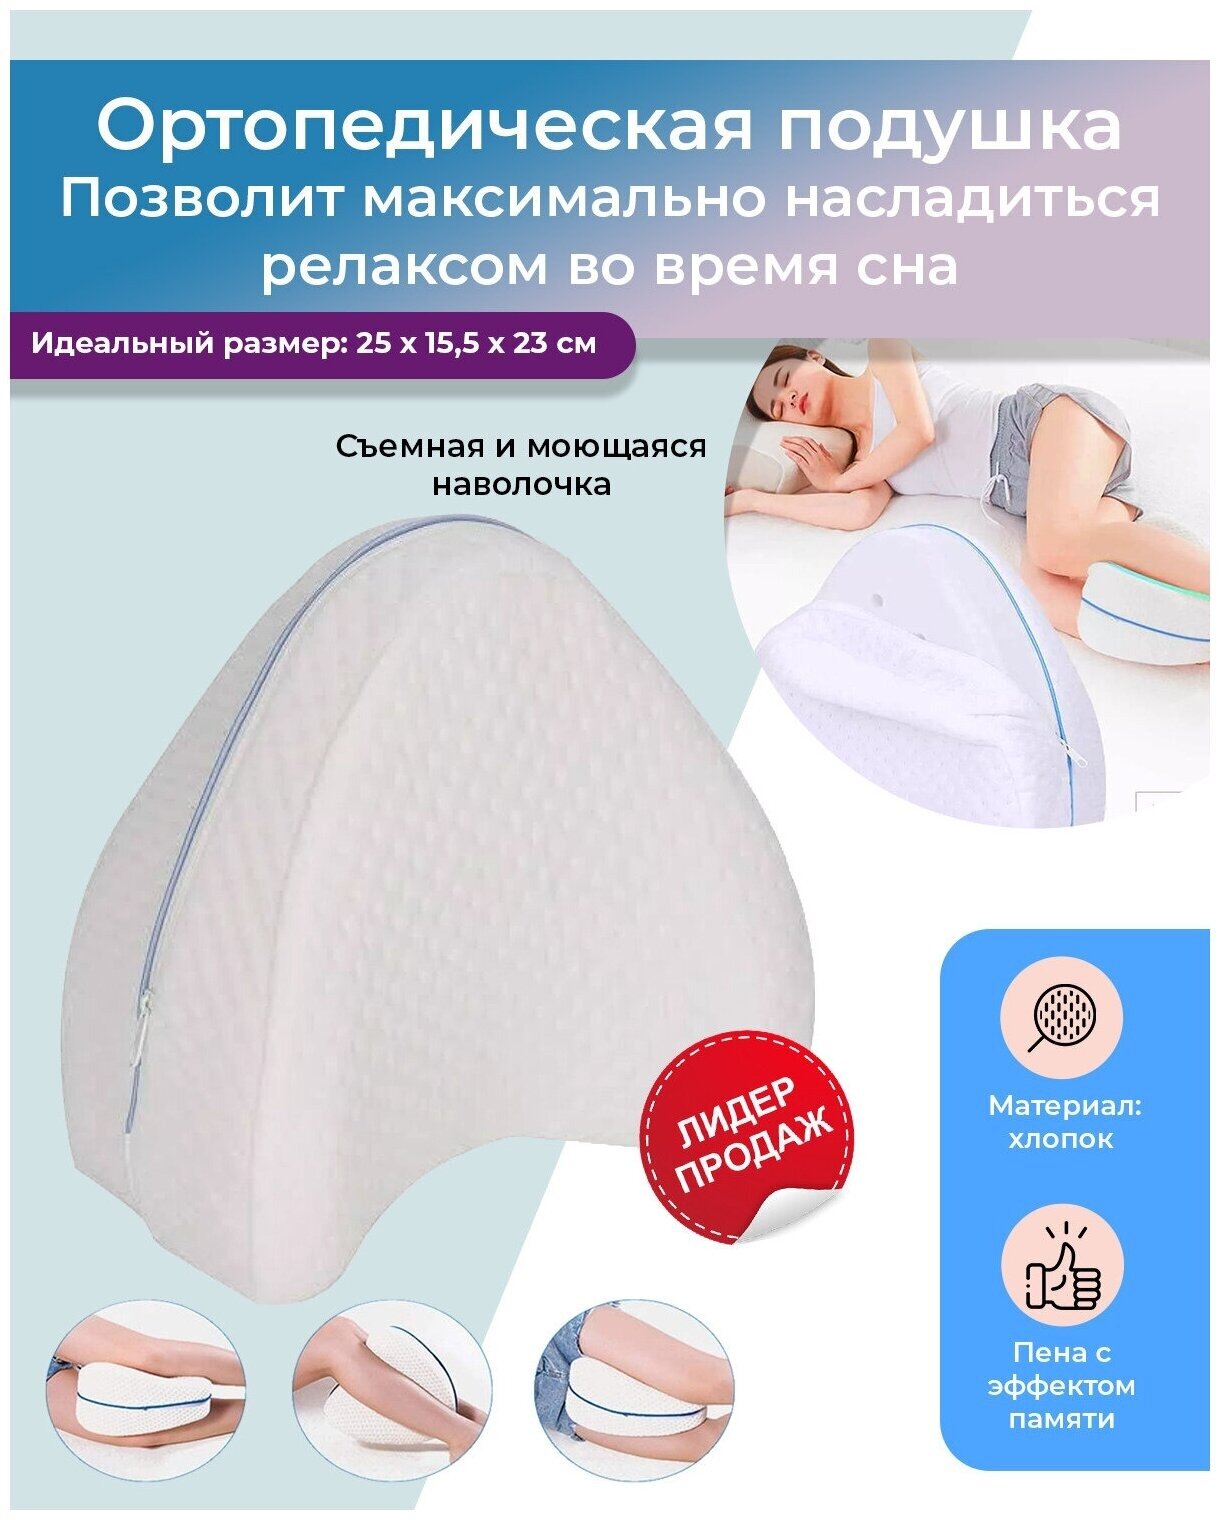 Анатомическая подушка для ног, Подушка между ног для сна, Подушка для коленей, Ортопедическая подушка